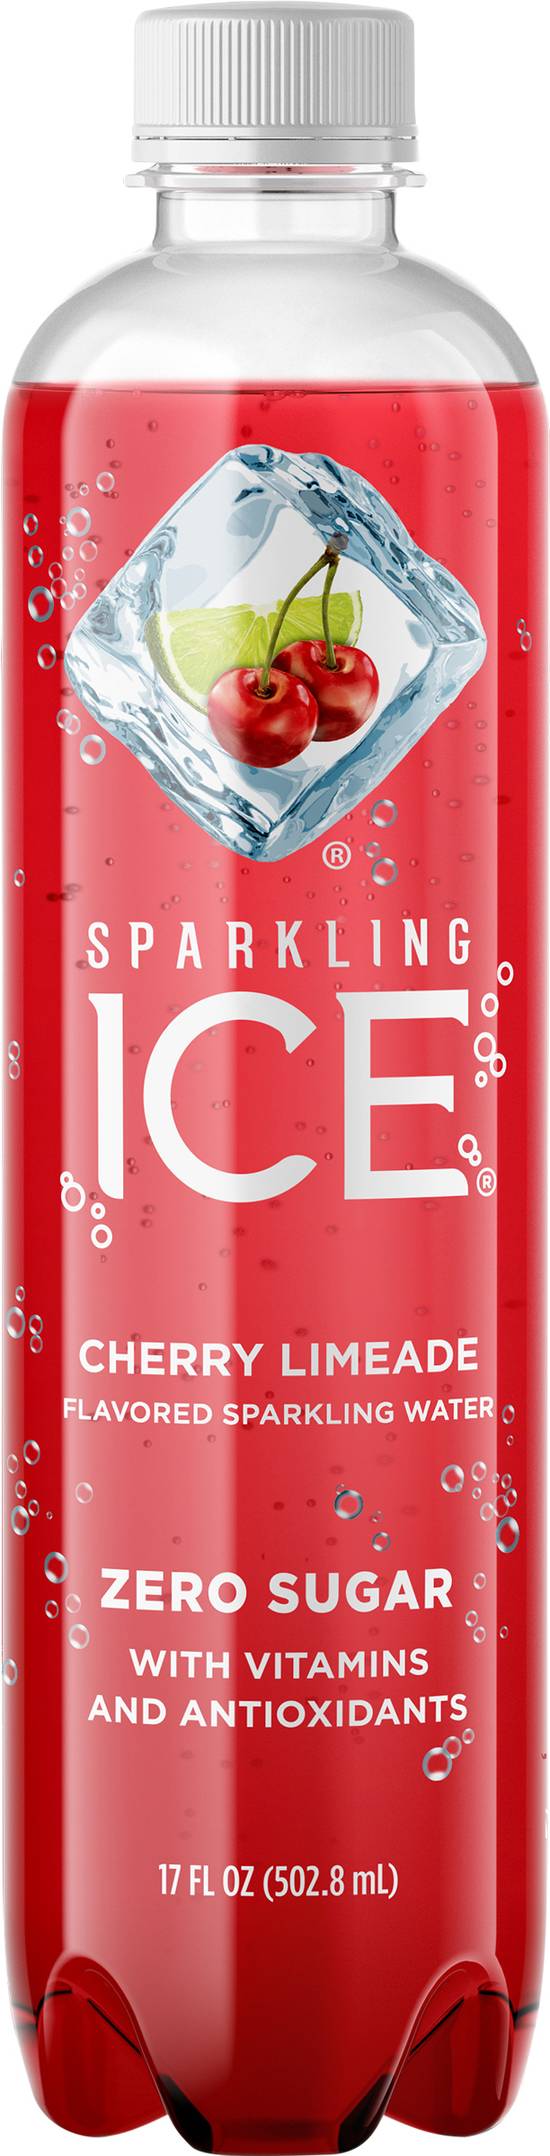 Sparkling Ice Zero Sugar Cherry Limeade Sparkling Water (17 fl oz)